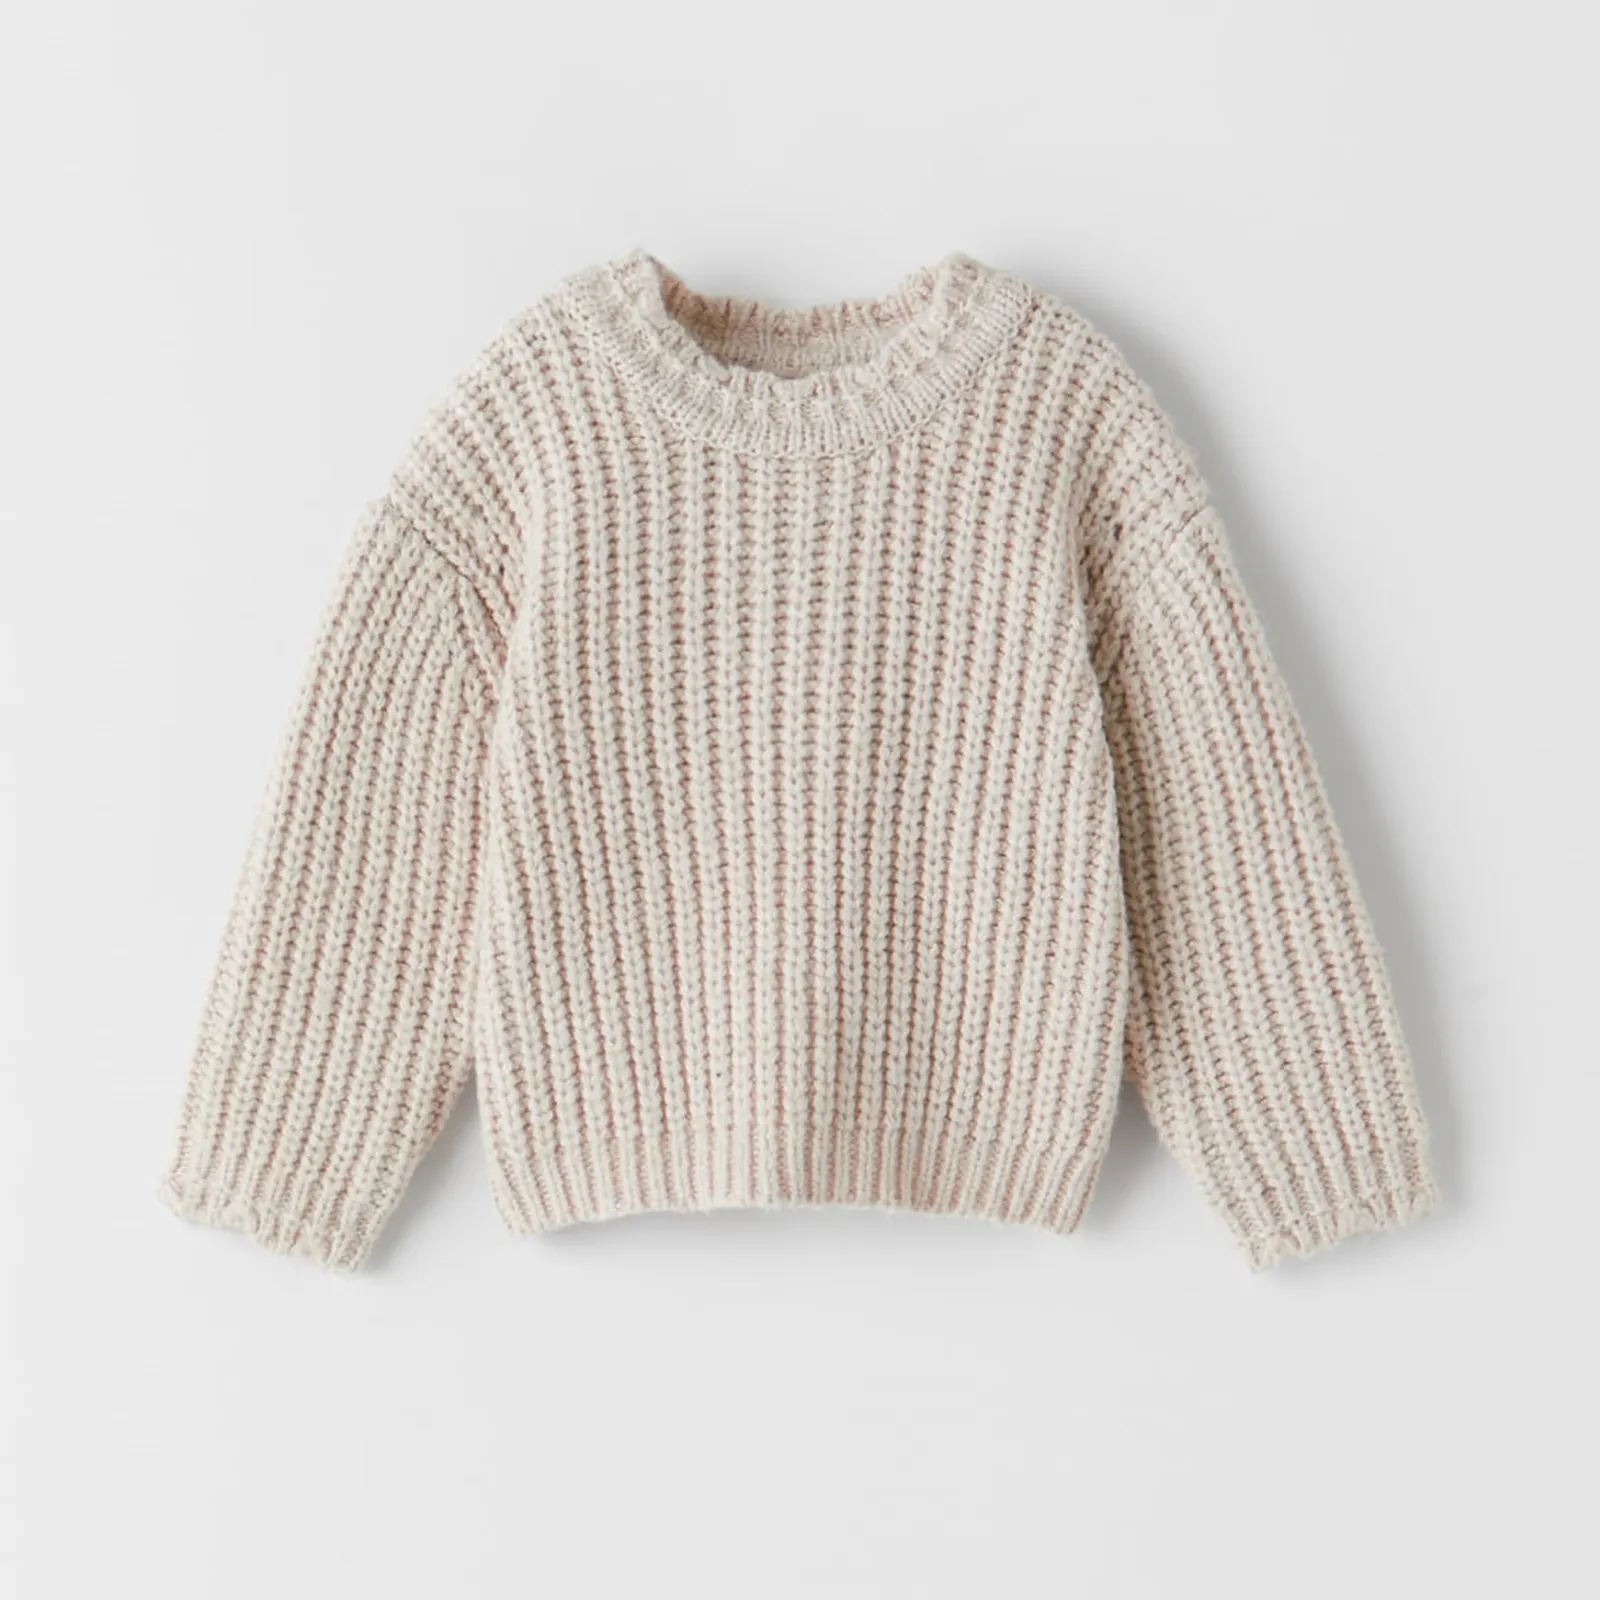 Nuevo venta al por mayor de alta calidad en China envío rápido venta al por mayor de moda Casual suéter de los niños